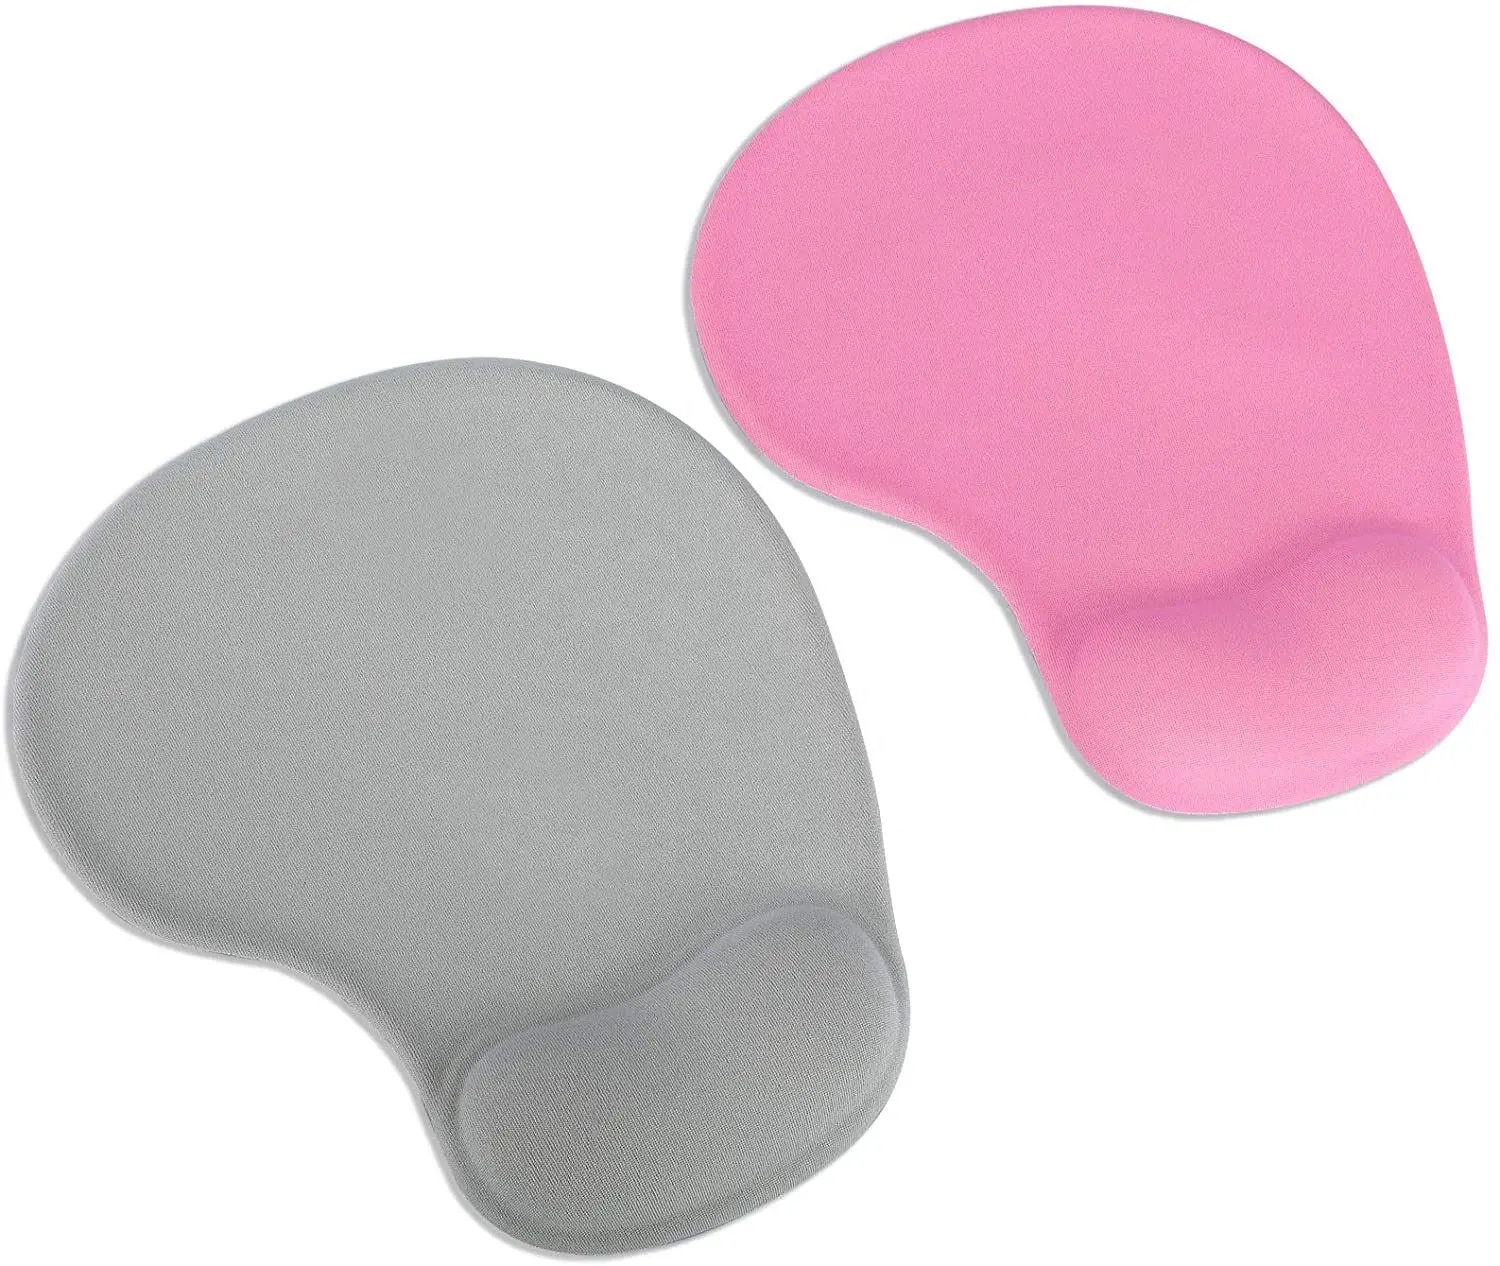 Mousepad com suporte para o pulso, mouse pad de impressão ergonômica promocional para proteção do pulso